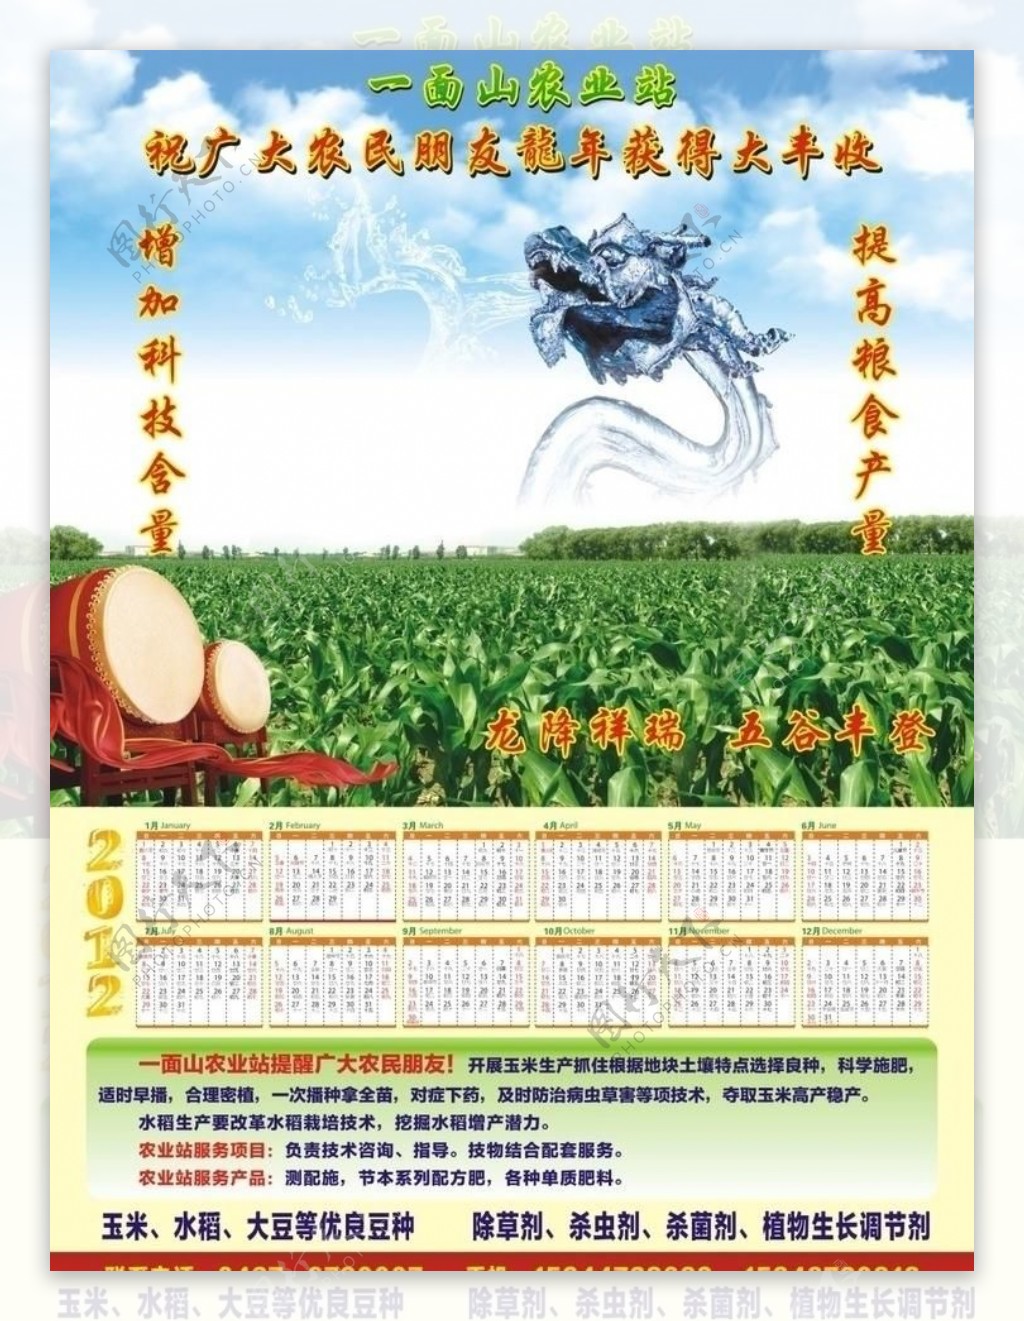 2012年农业挂历海报图片